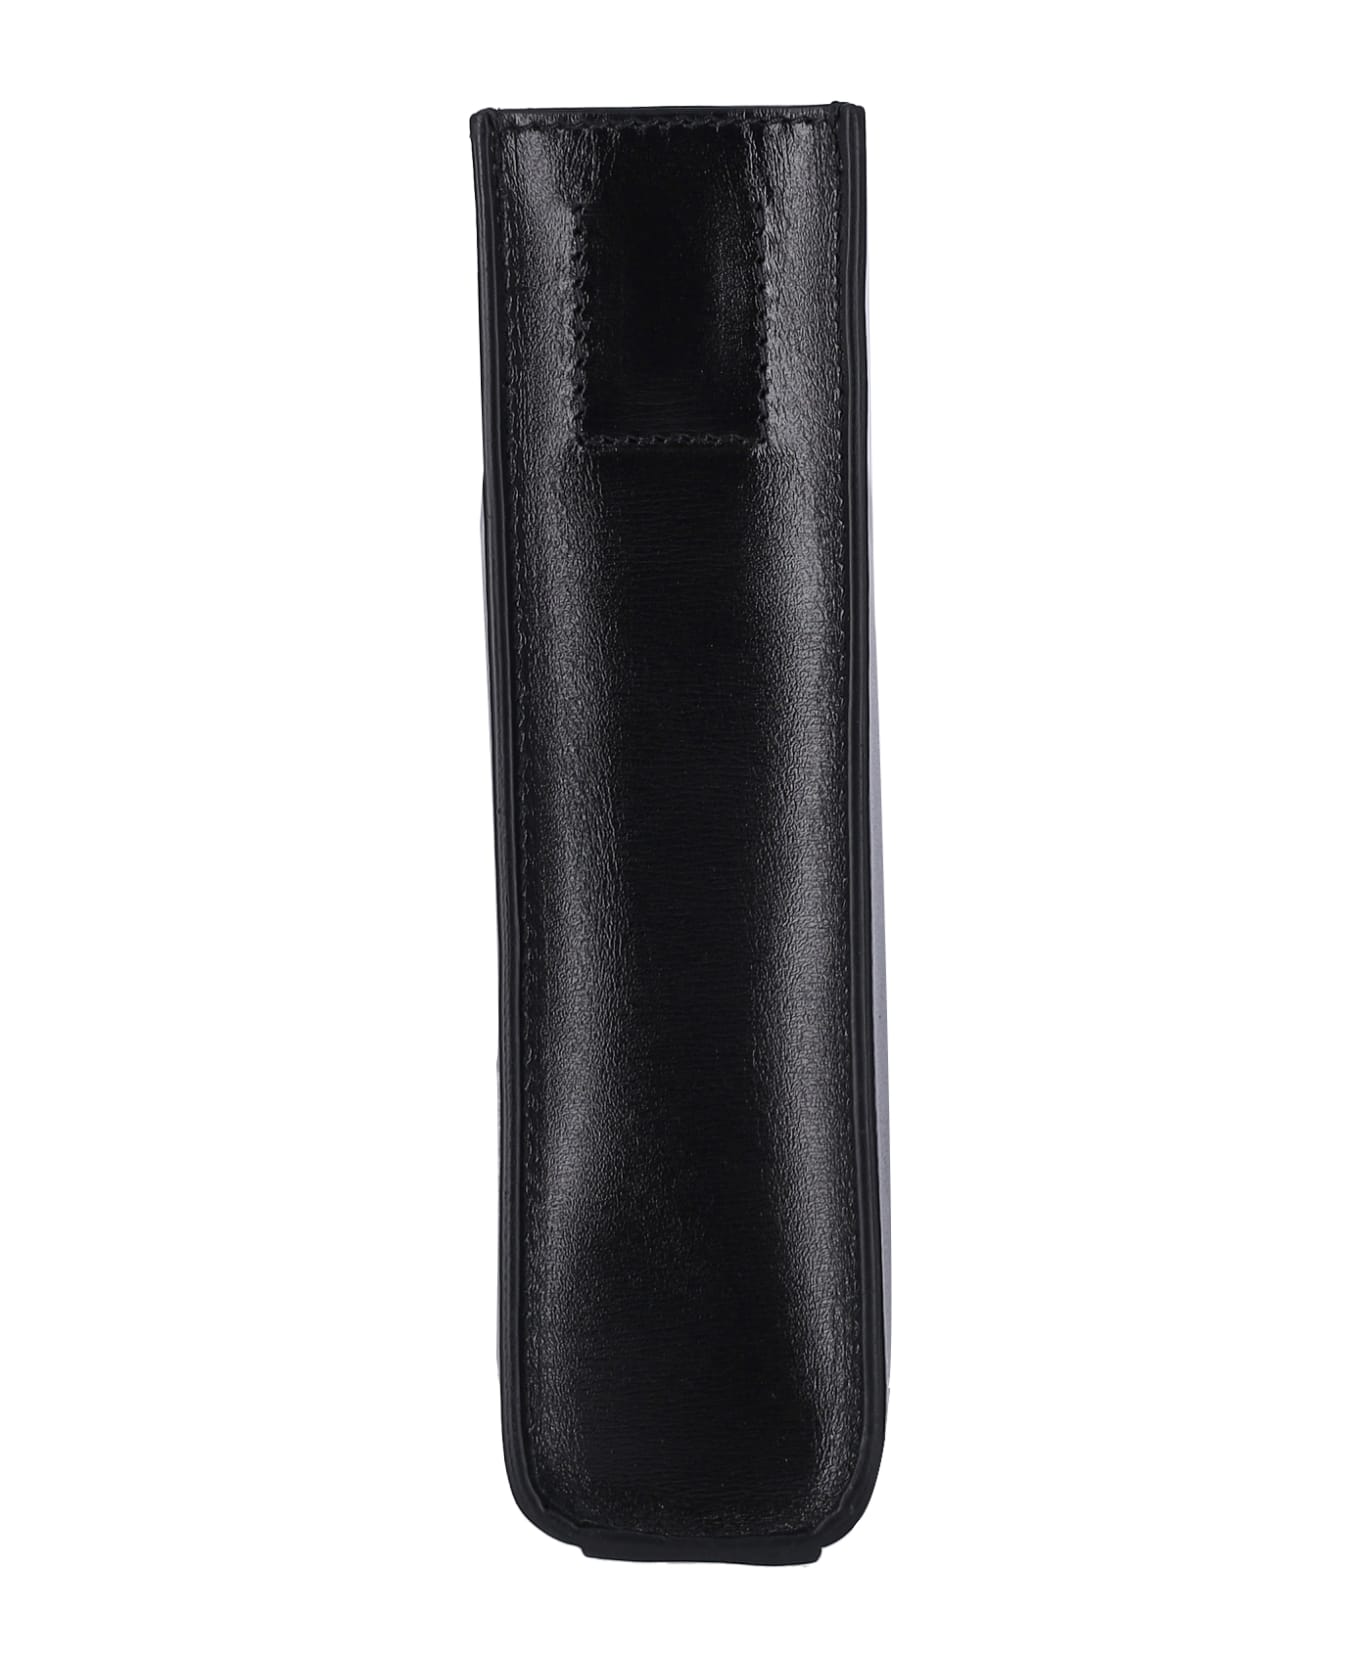 Jil Sander 'tangle' Small Shoulder Bag - Black クラッチバッグ